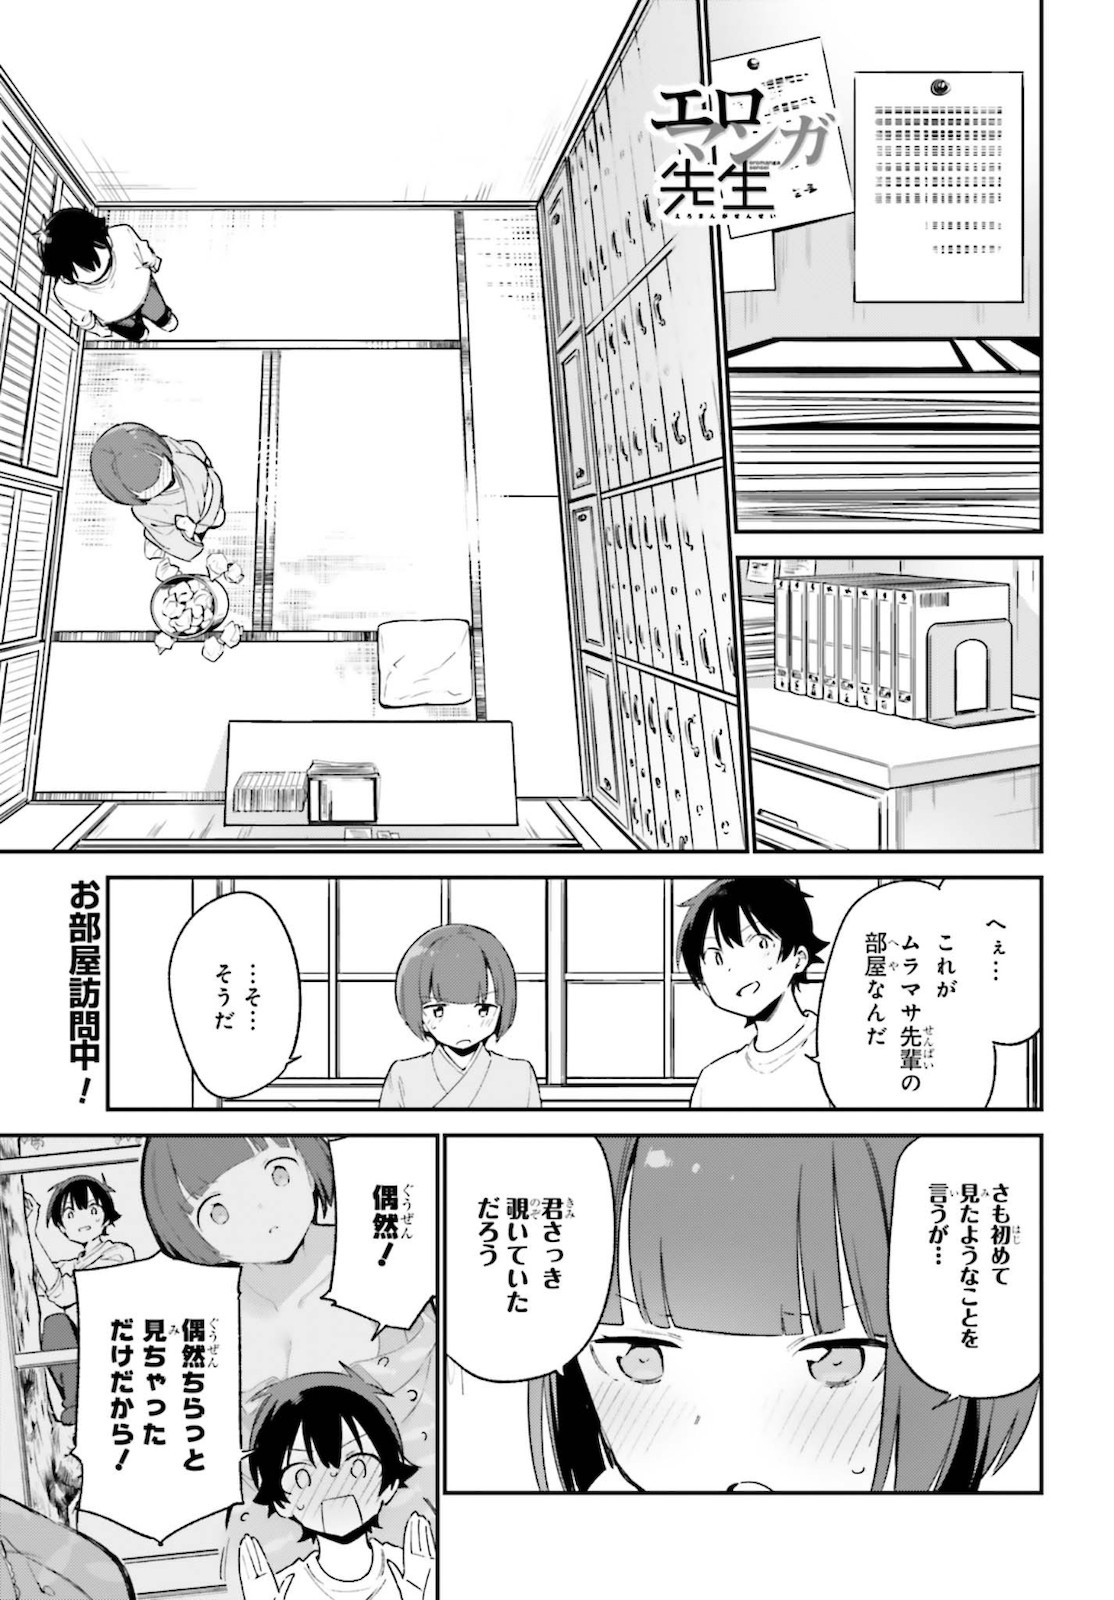 Ero Manga Sensei - Chapter 71 - Page 1